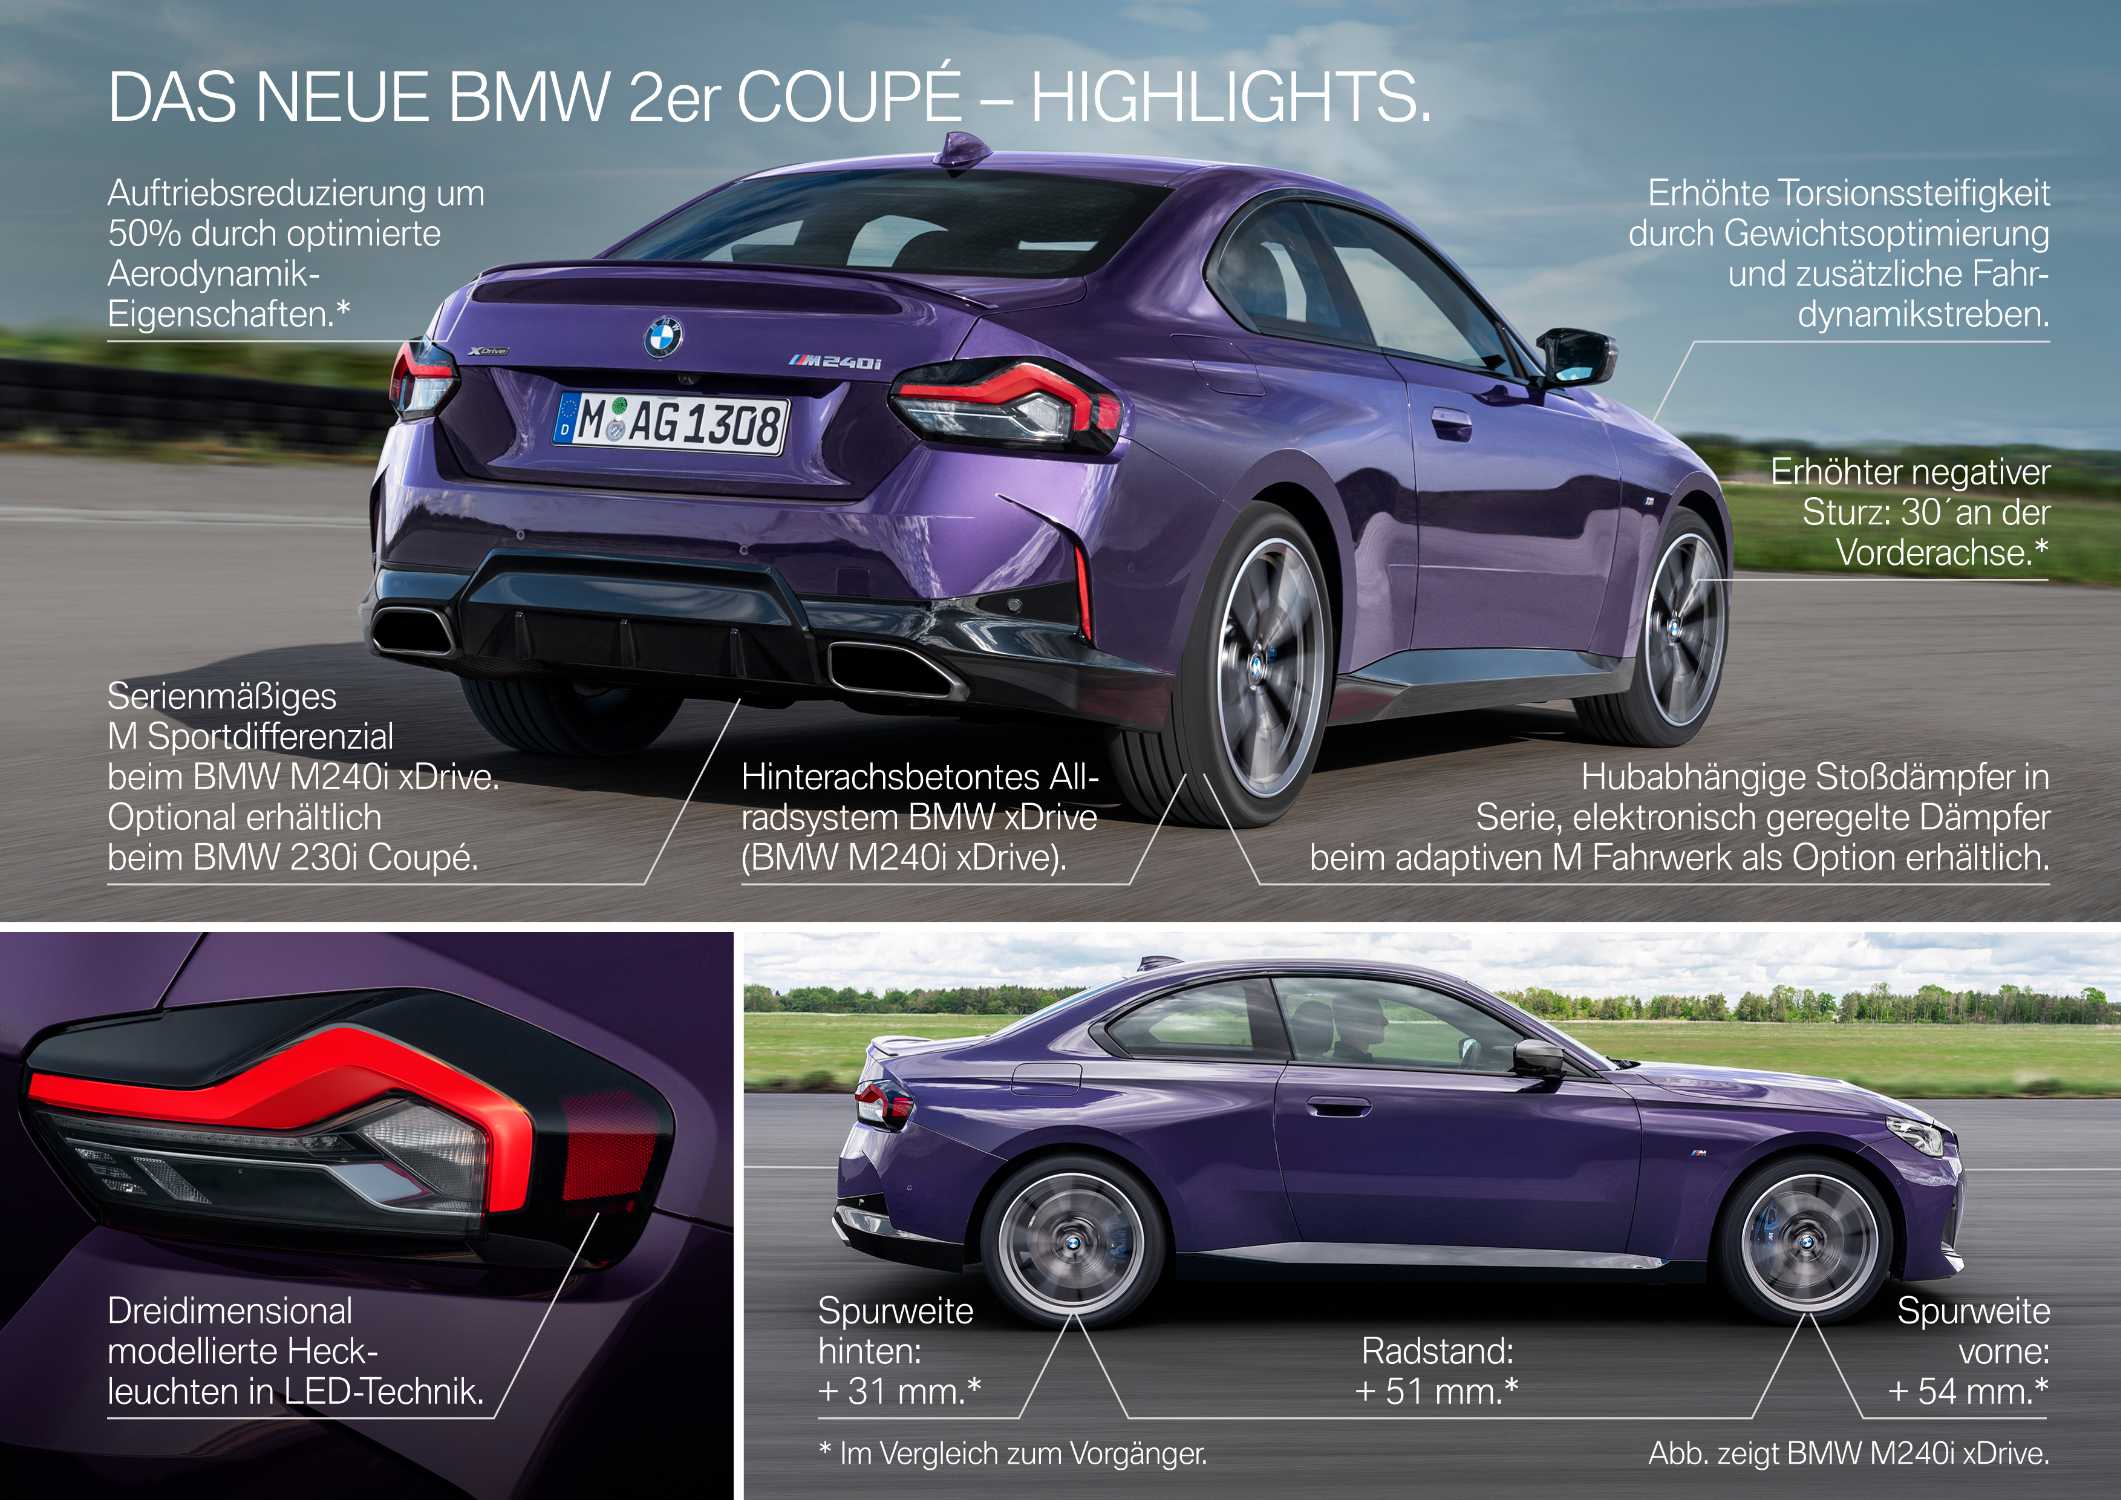 Das neue BMW 2er Coupé - Highlights (07/2021).